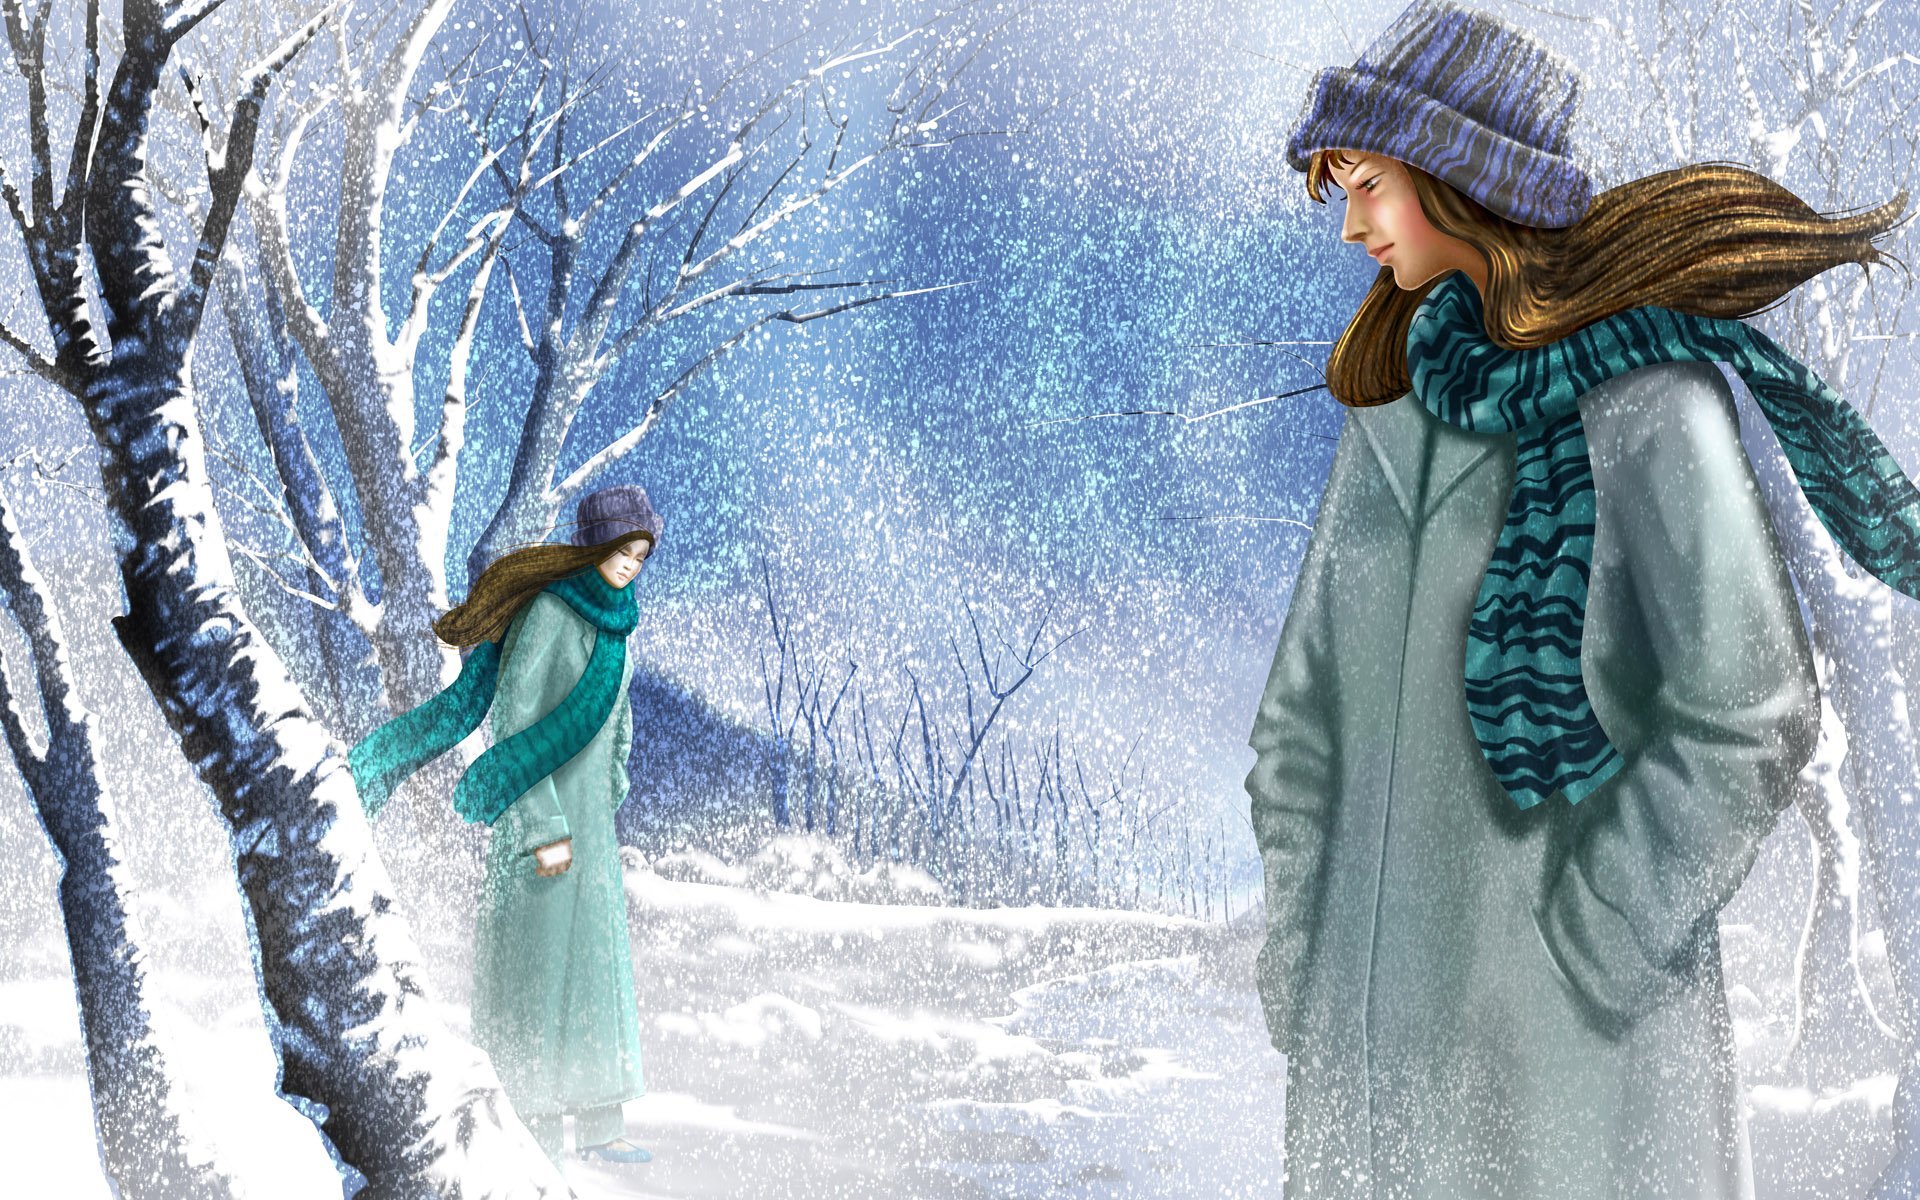 Картинка встреча зимы. Зима иллюстрация. Левушка зима рисуннок. Зимний пейзаж с людьми.